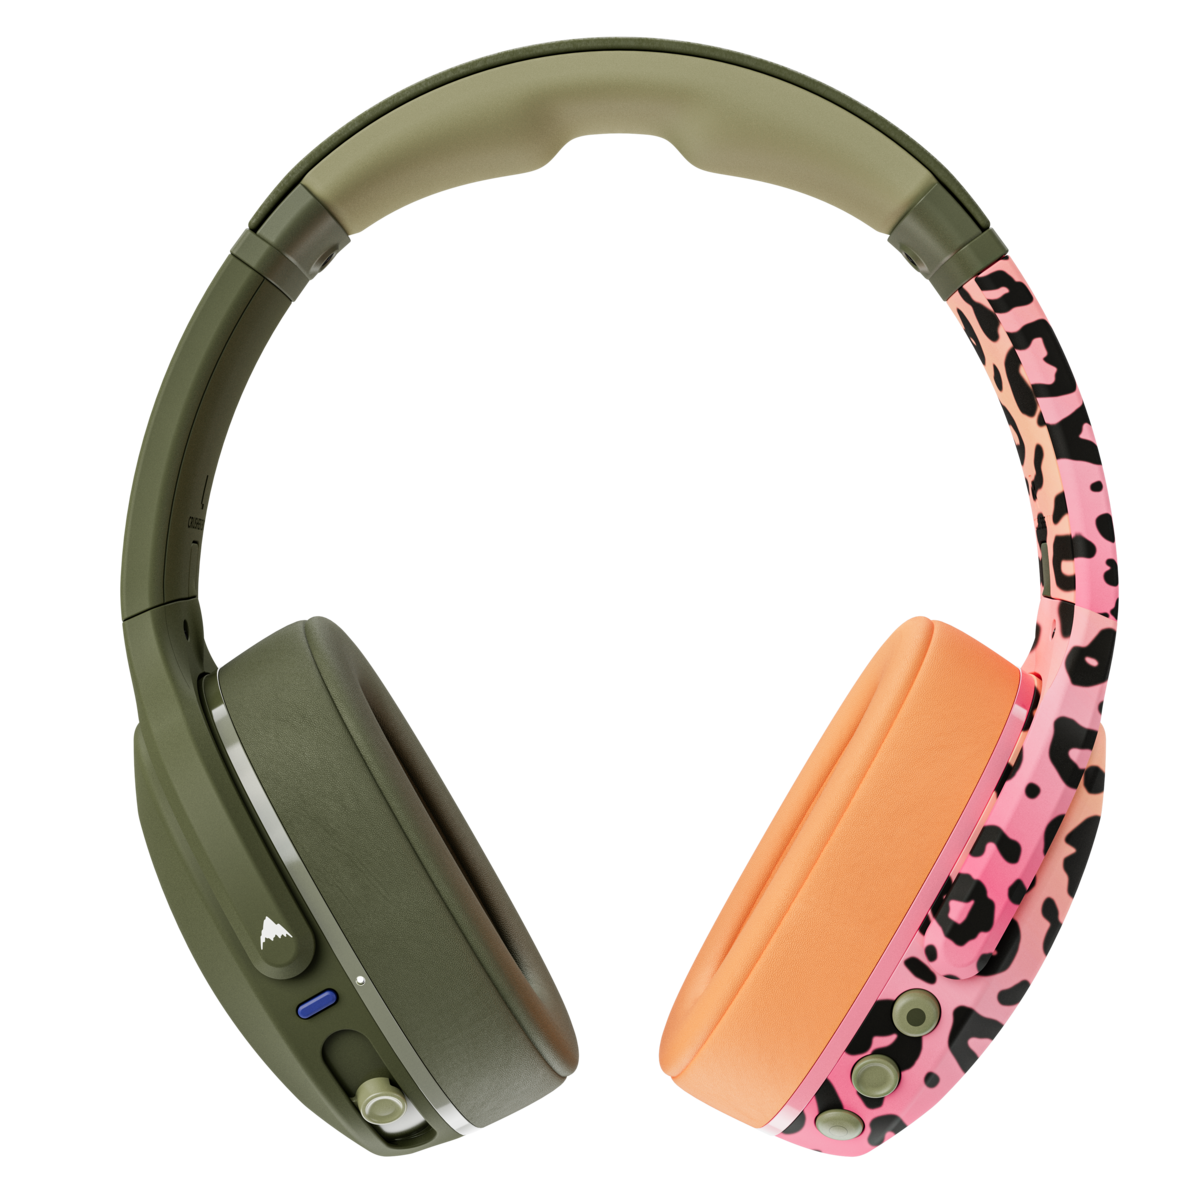 Skullcandy's Crusher Evo Wireless Headphone